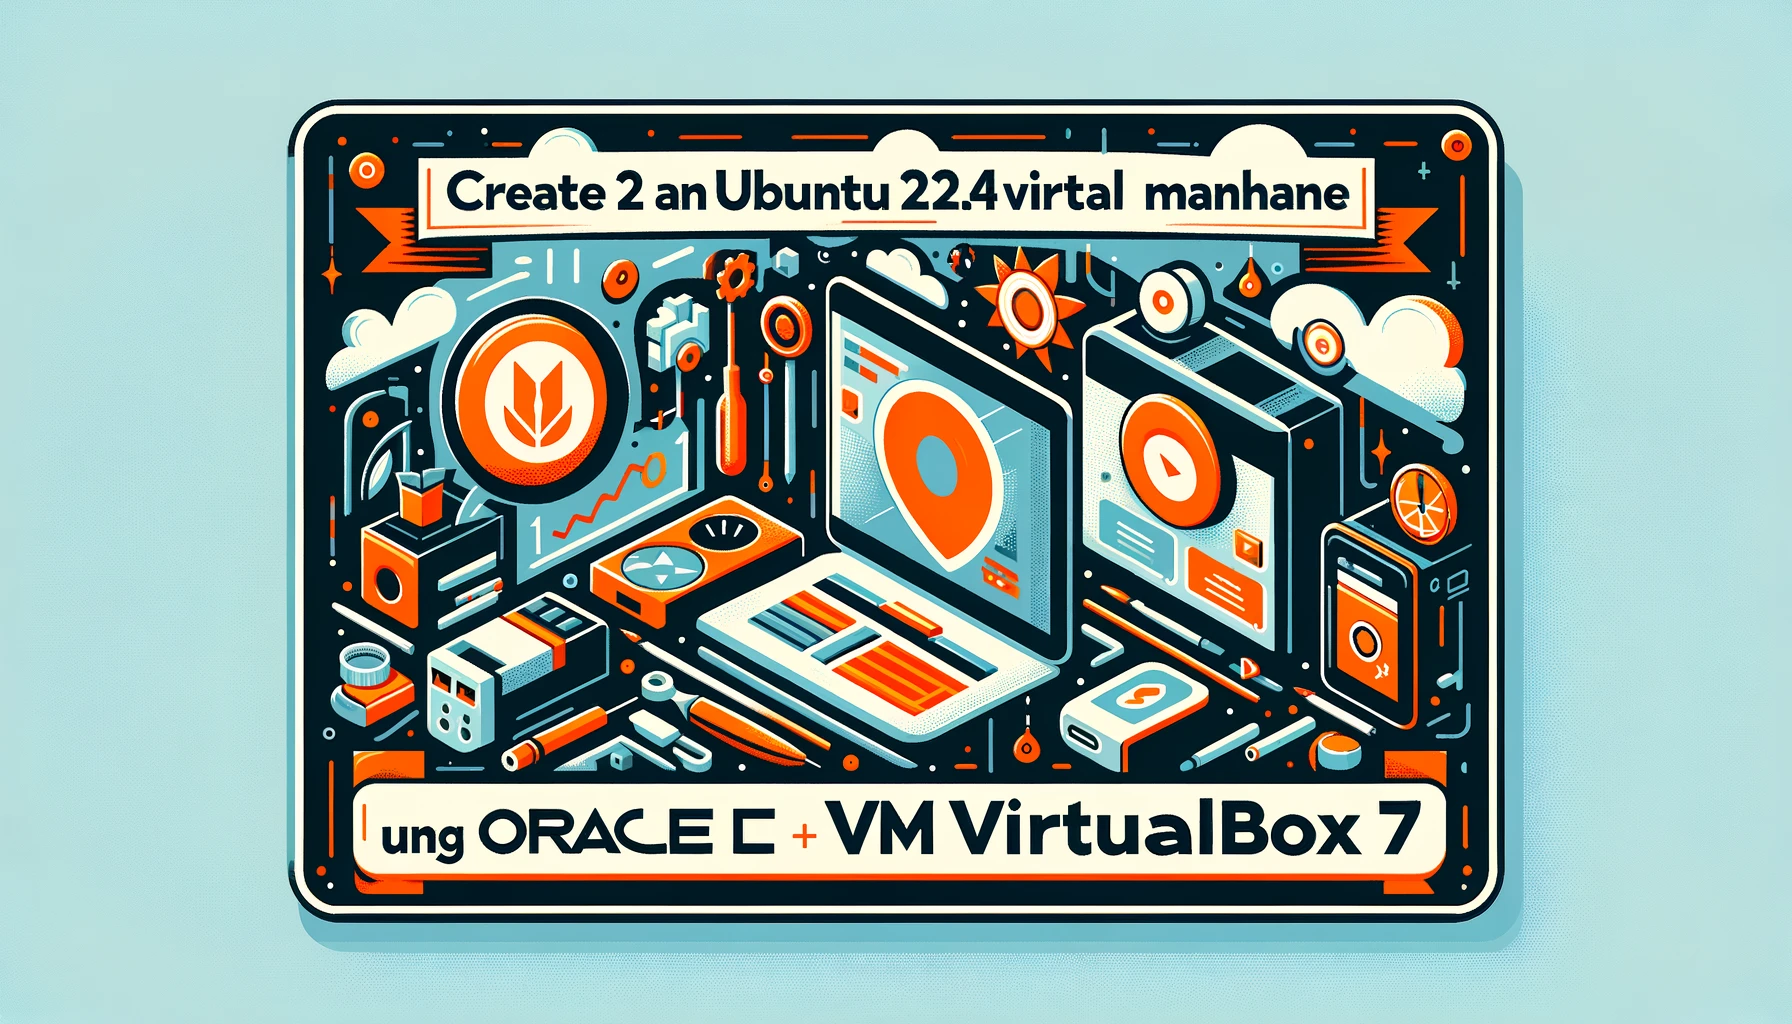 Lesson 1 - Create an Ubuntu 22.04 virtual machine using Oracle VM VirtualBox 7